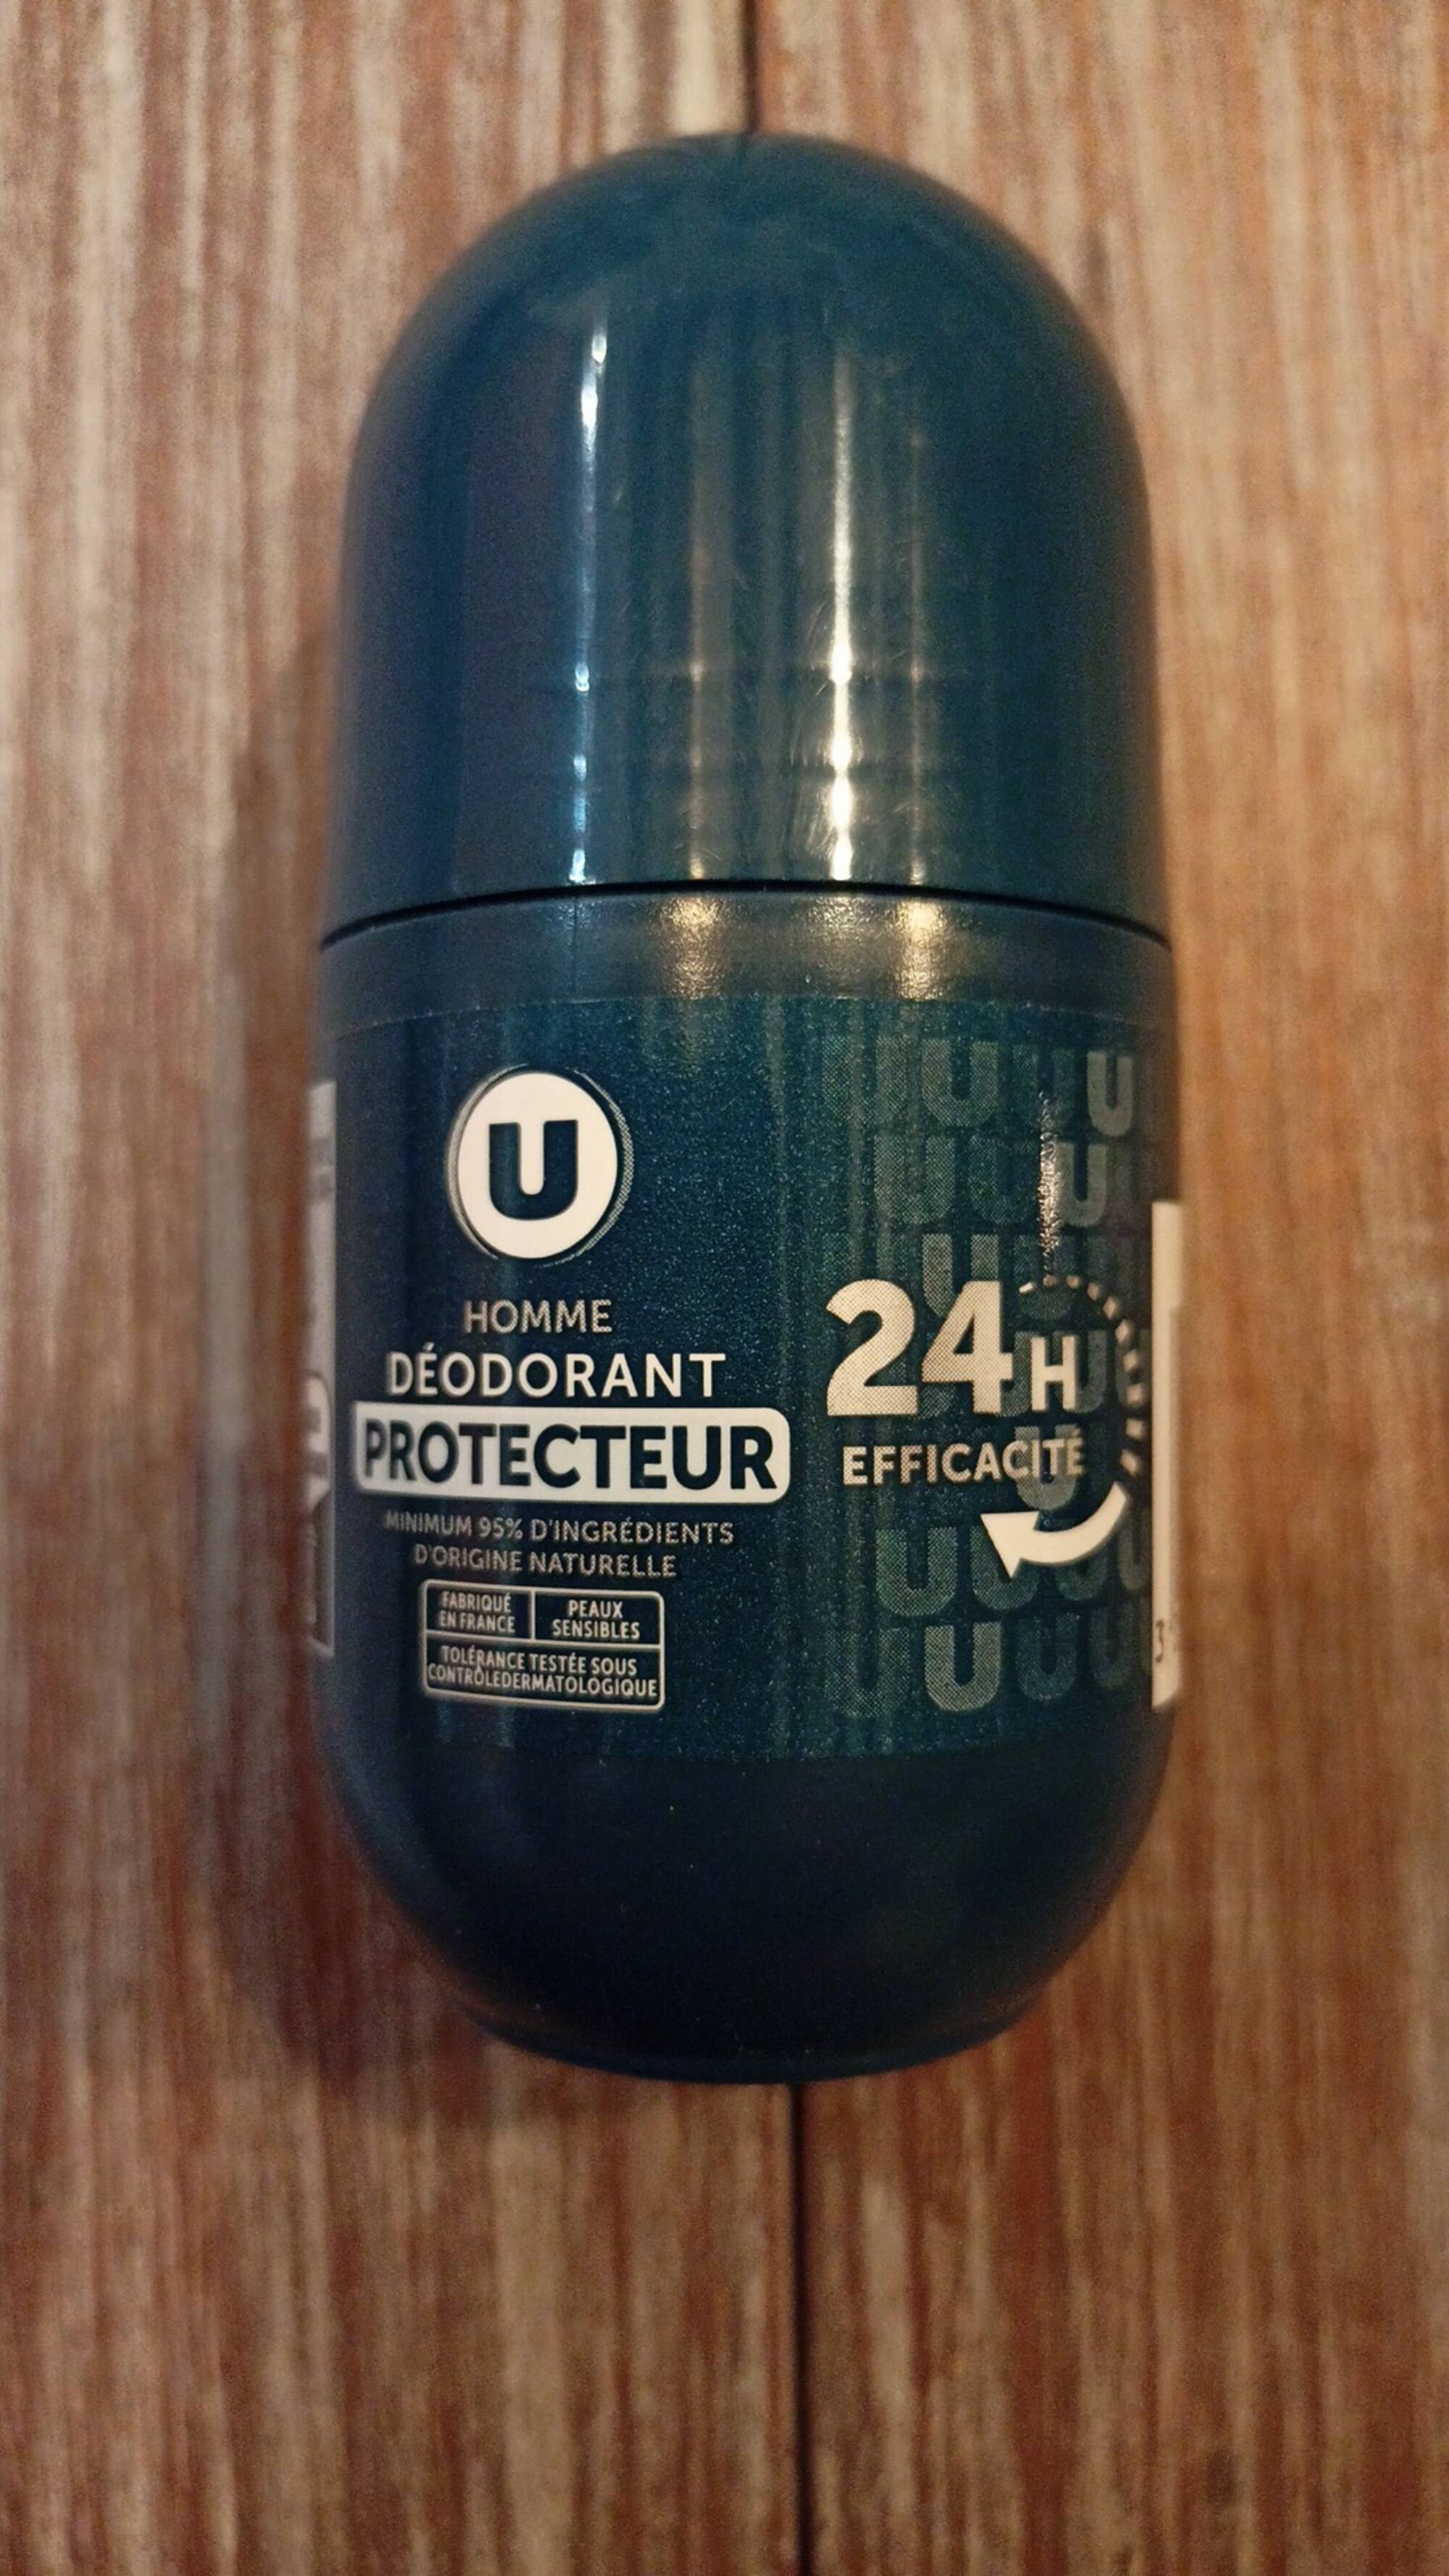 U - Homme - Déodorant protecteur 24h